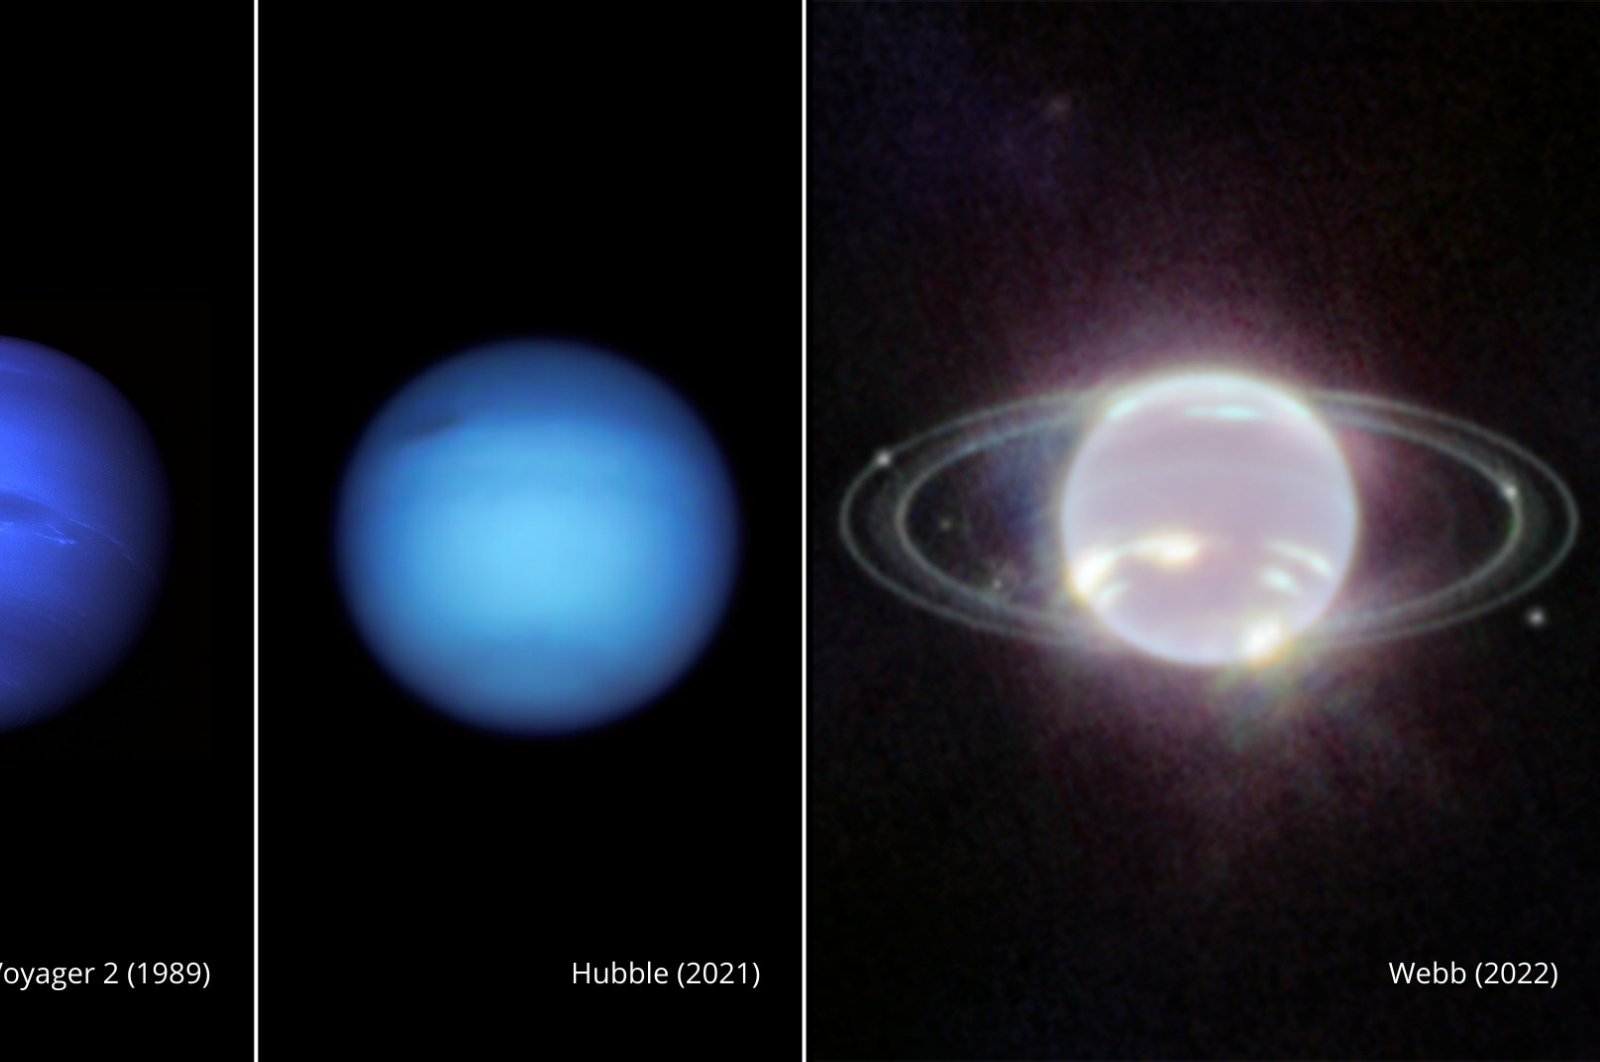 Webb menangkap gambar Neptunus yang mempesona dan cincinnya yang halus